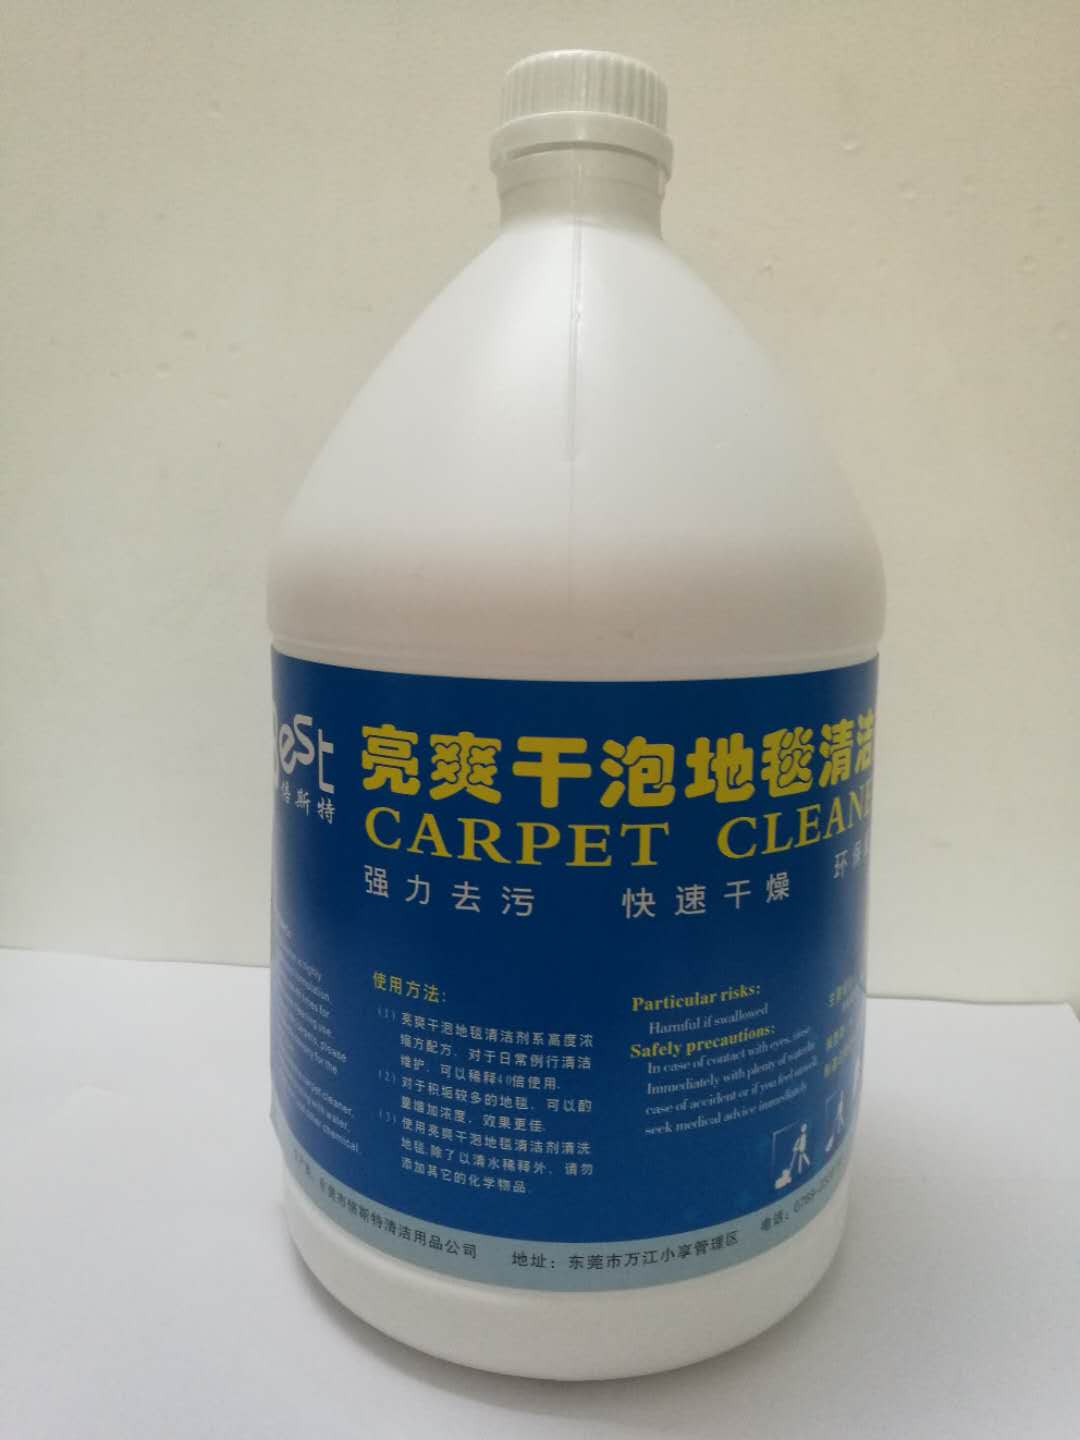 东莞地毯清洁剂 供应广东地毯清洁剂去污清洗好帮手 供应广东干炮亮爽地毯水清洁保养图片